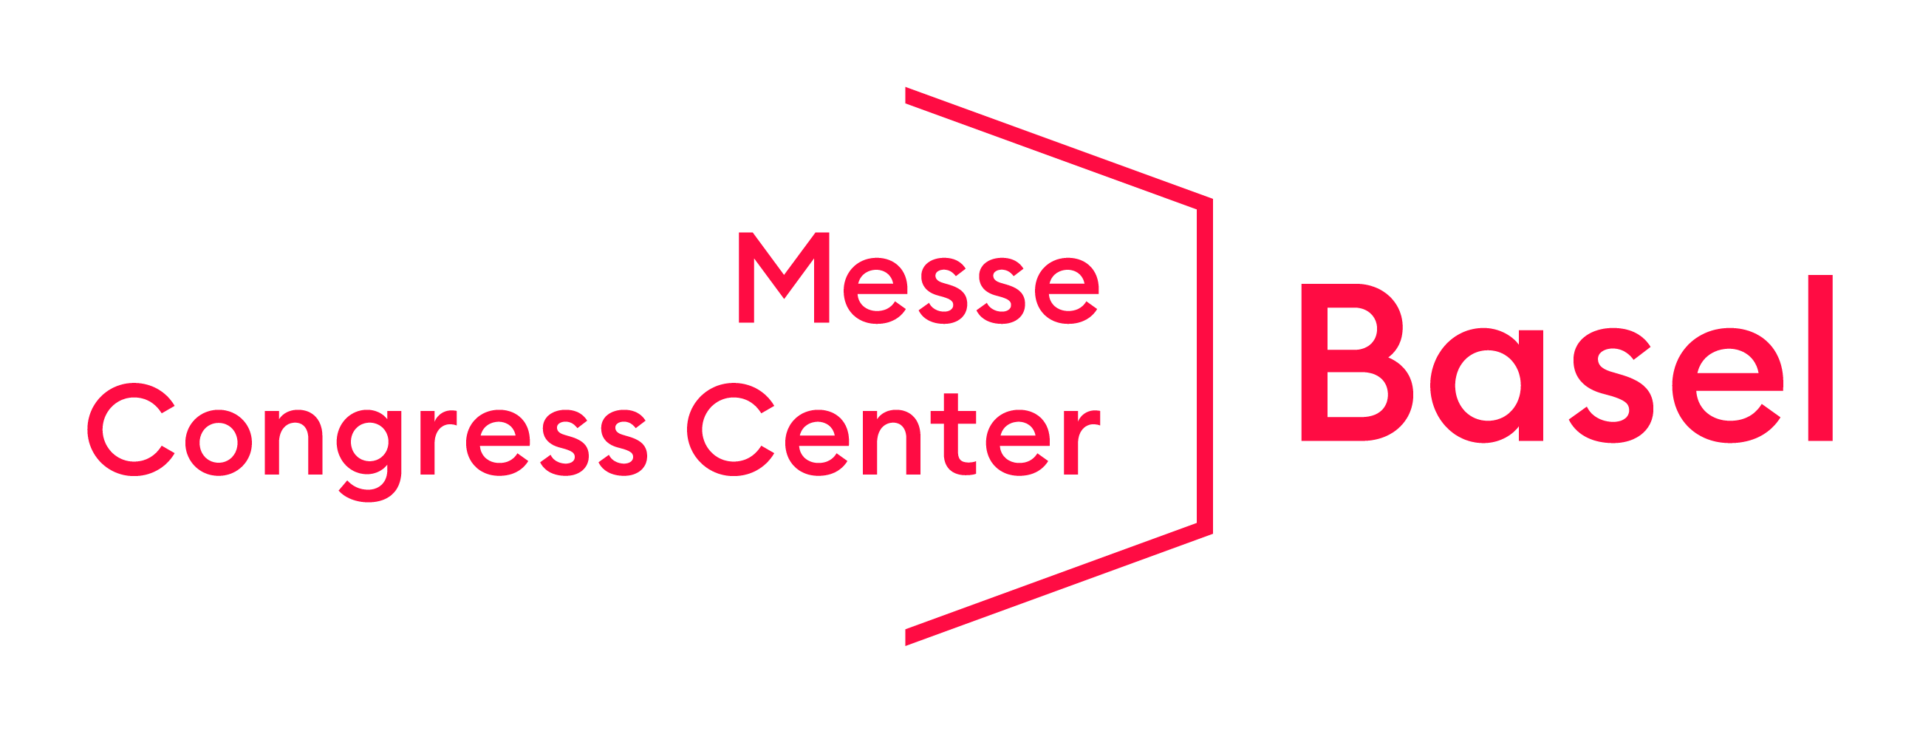 Messe und Congress Center Basel Logo